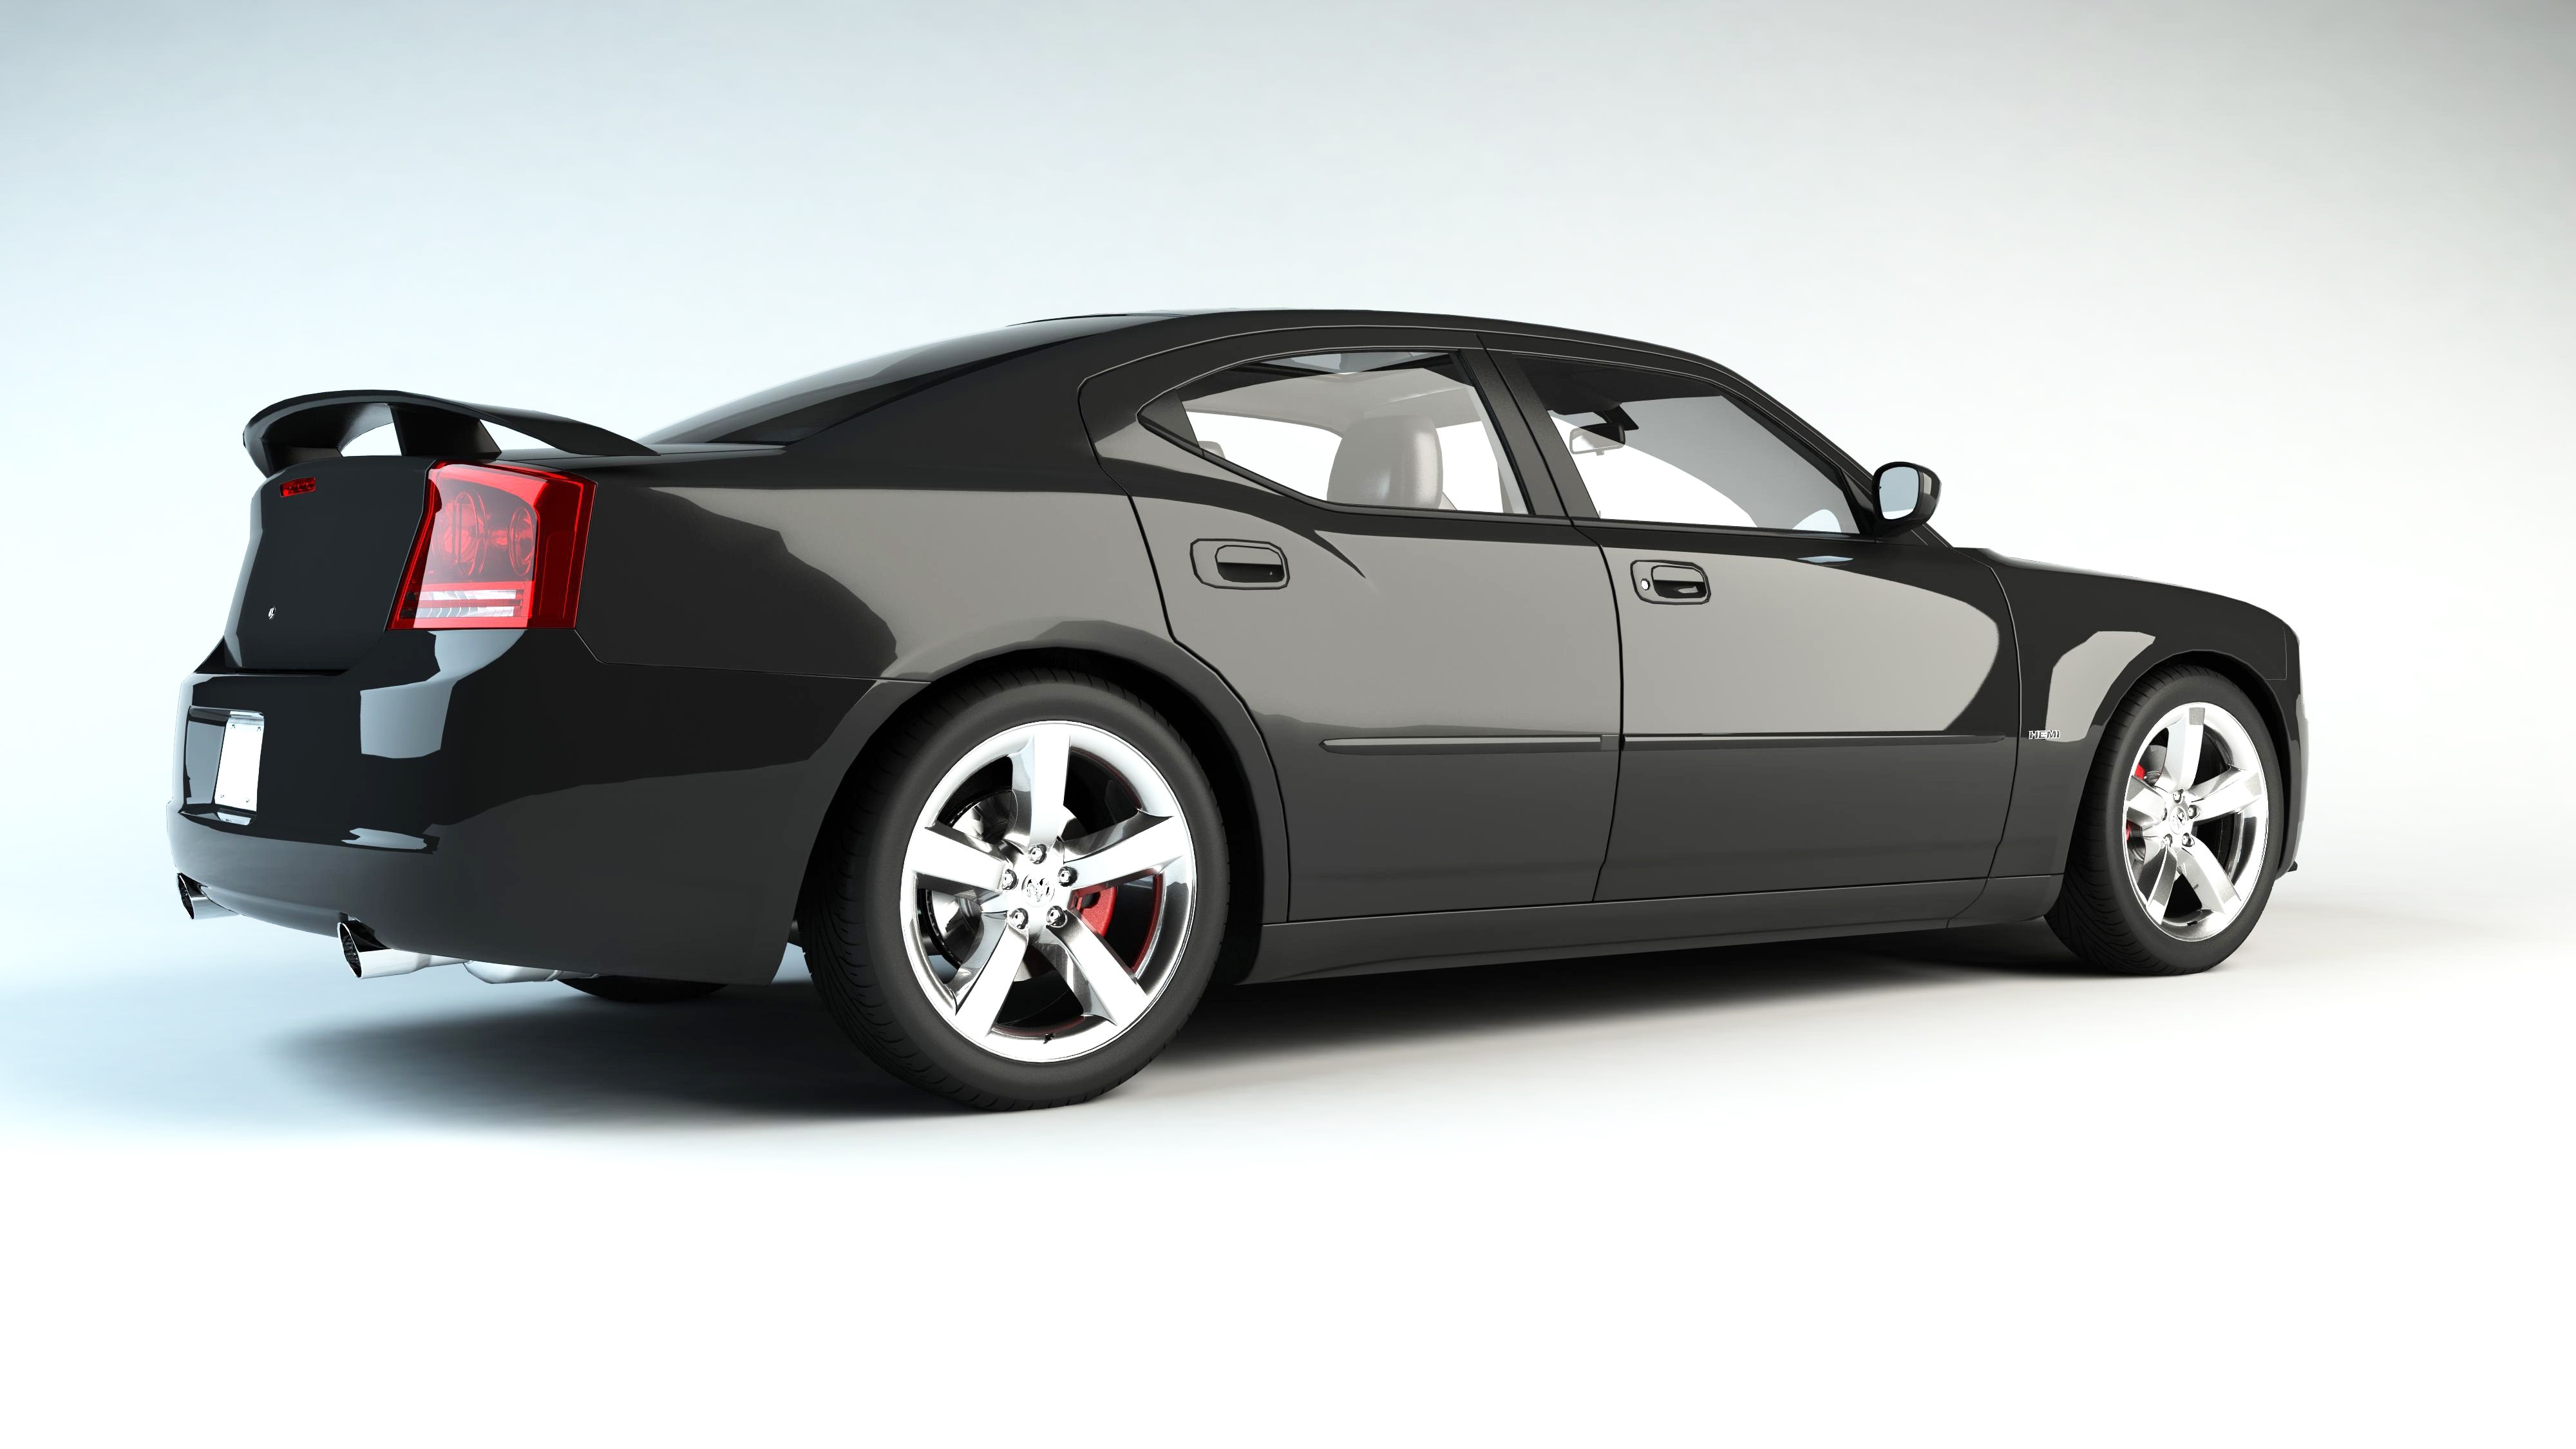 3D Car Wallpaper, Car, 3D Car Model, car, transportation